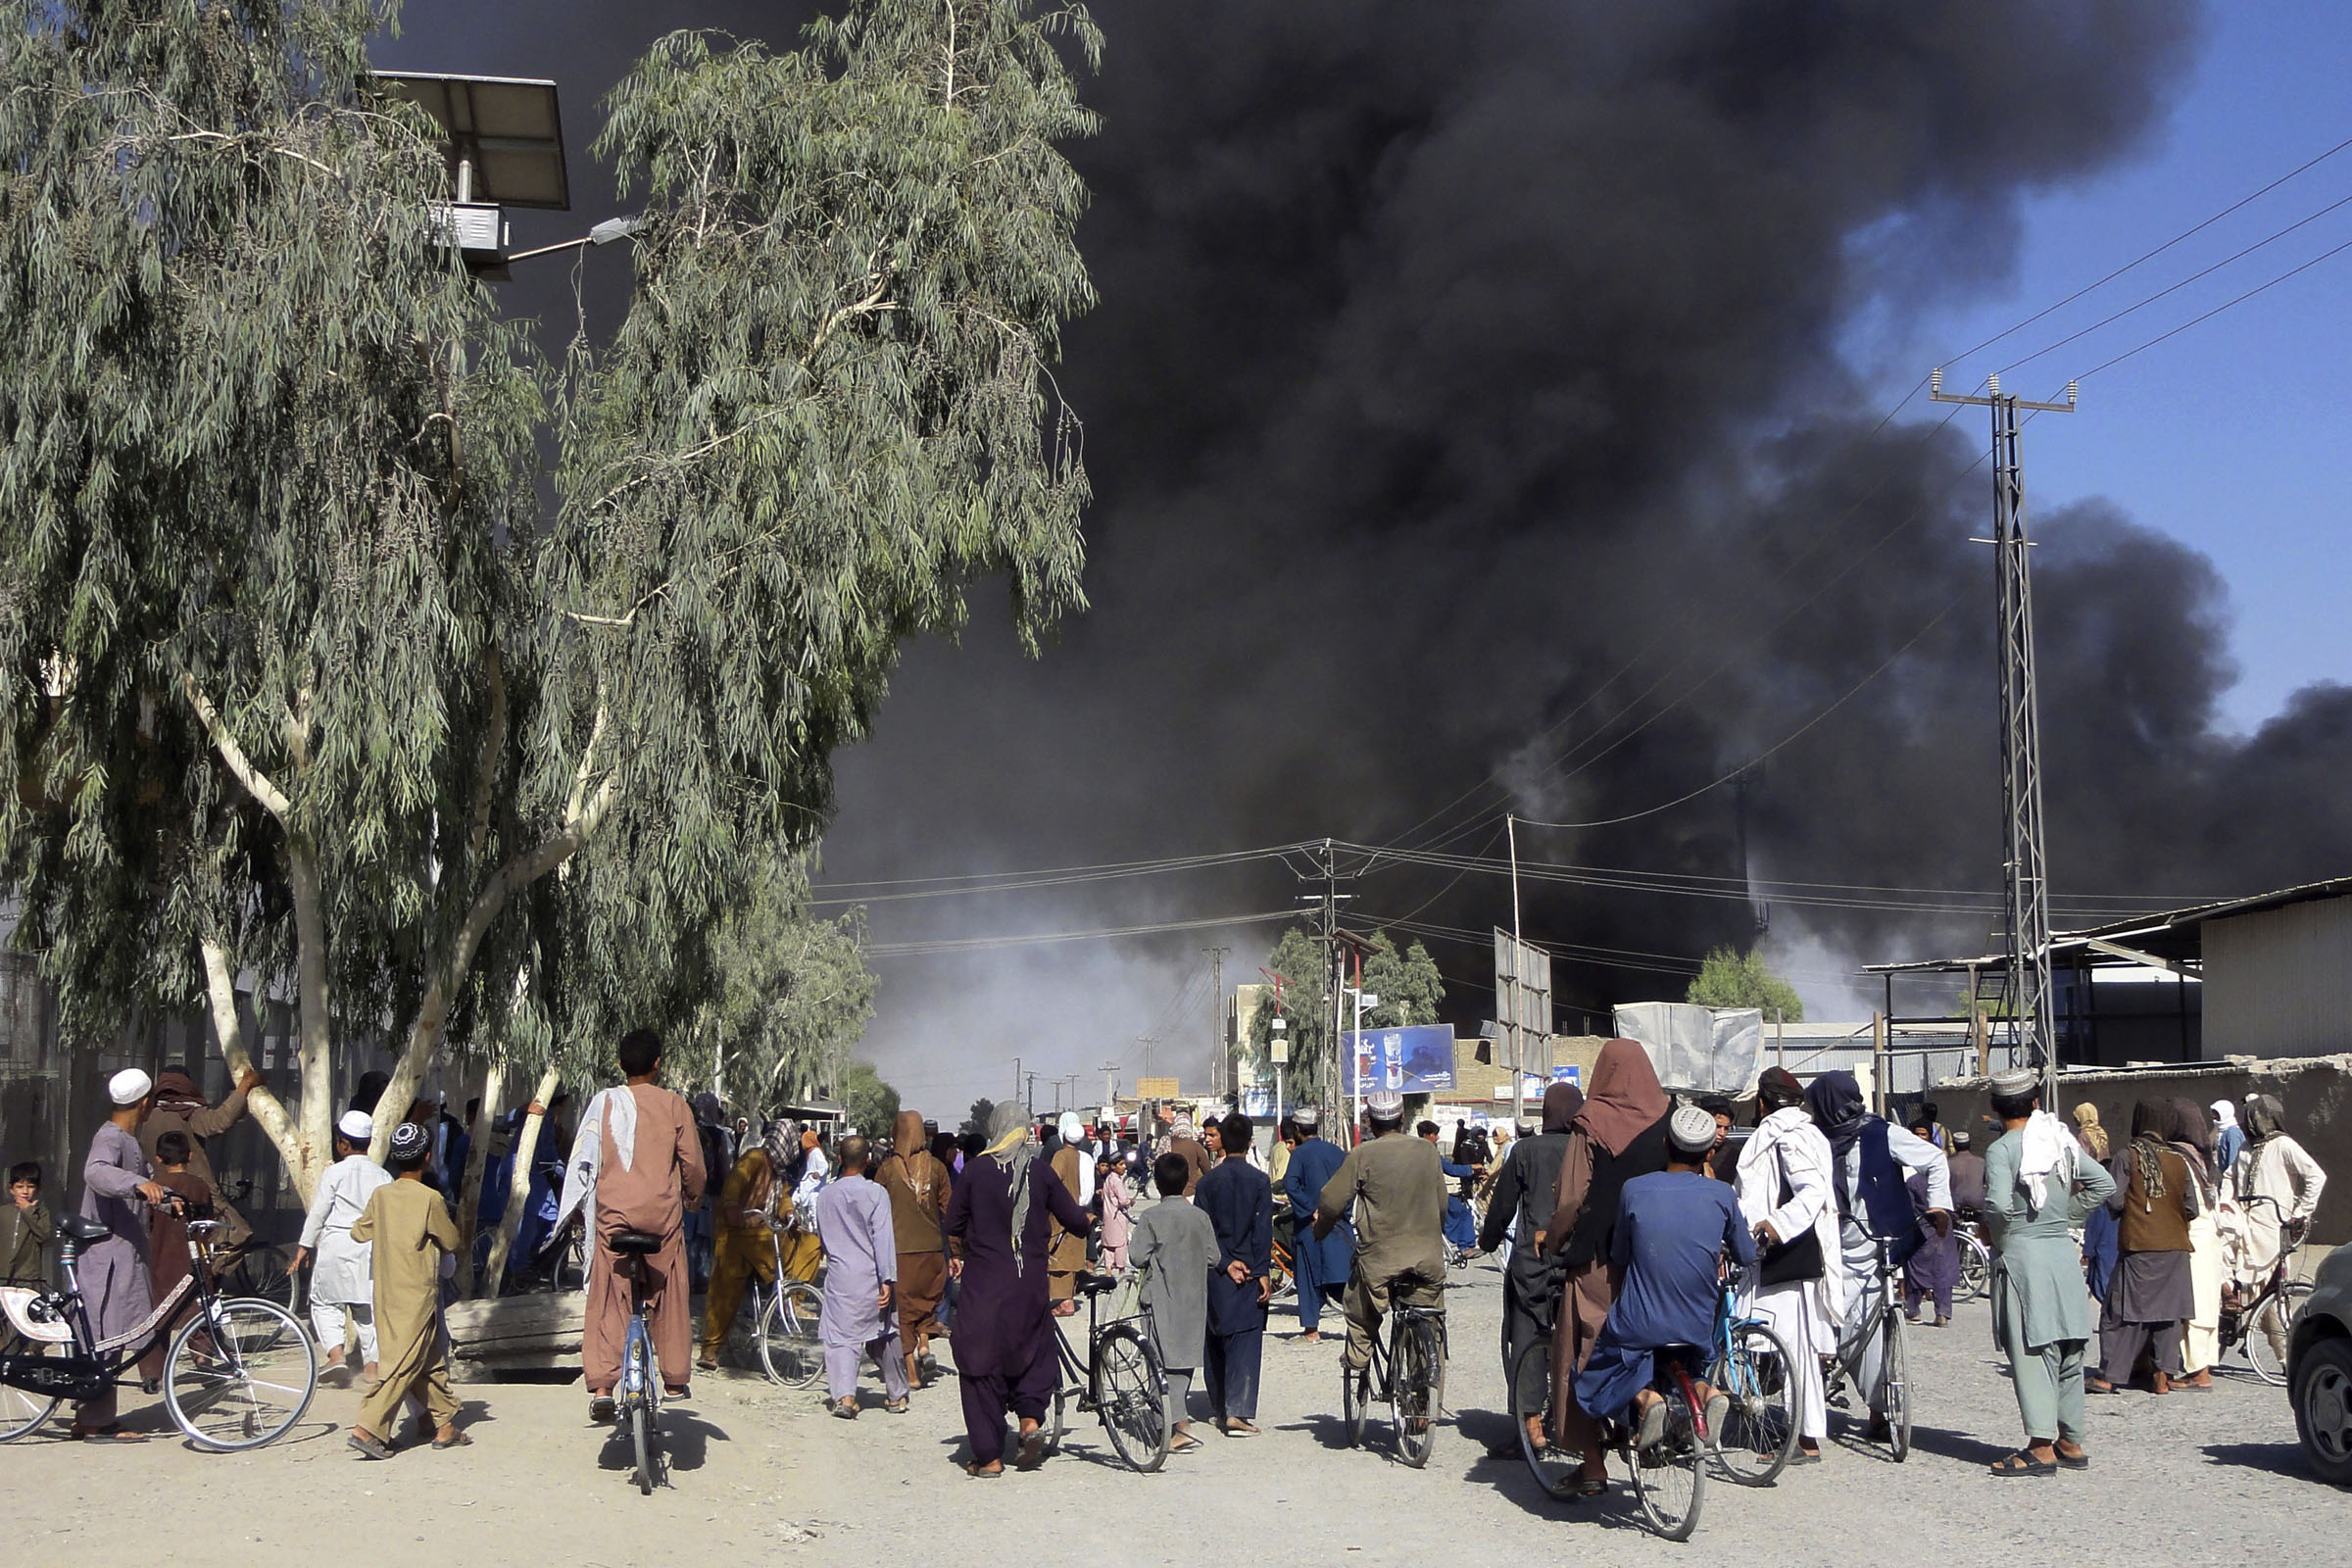 तालिबानी लडाकु काबुल नजिकै पुग्दा आफ्ना नागरिकको उद्धार गर्न उत्रियो अमेरिकी सेना